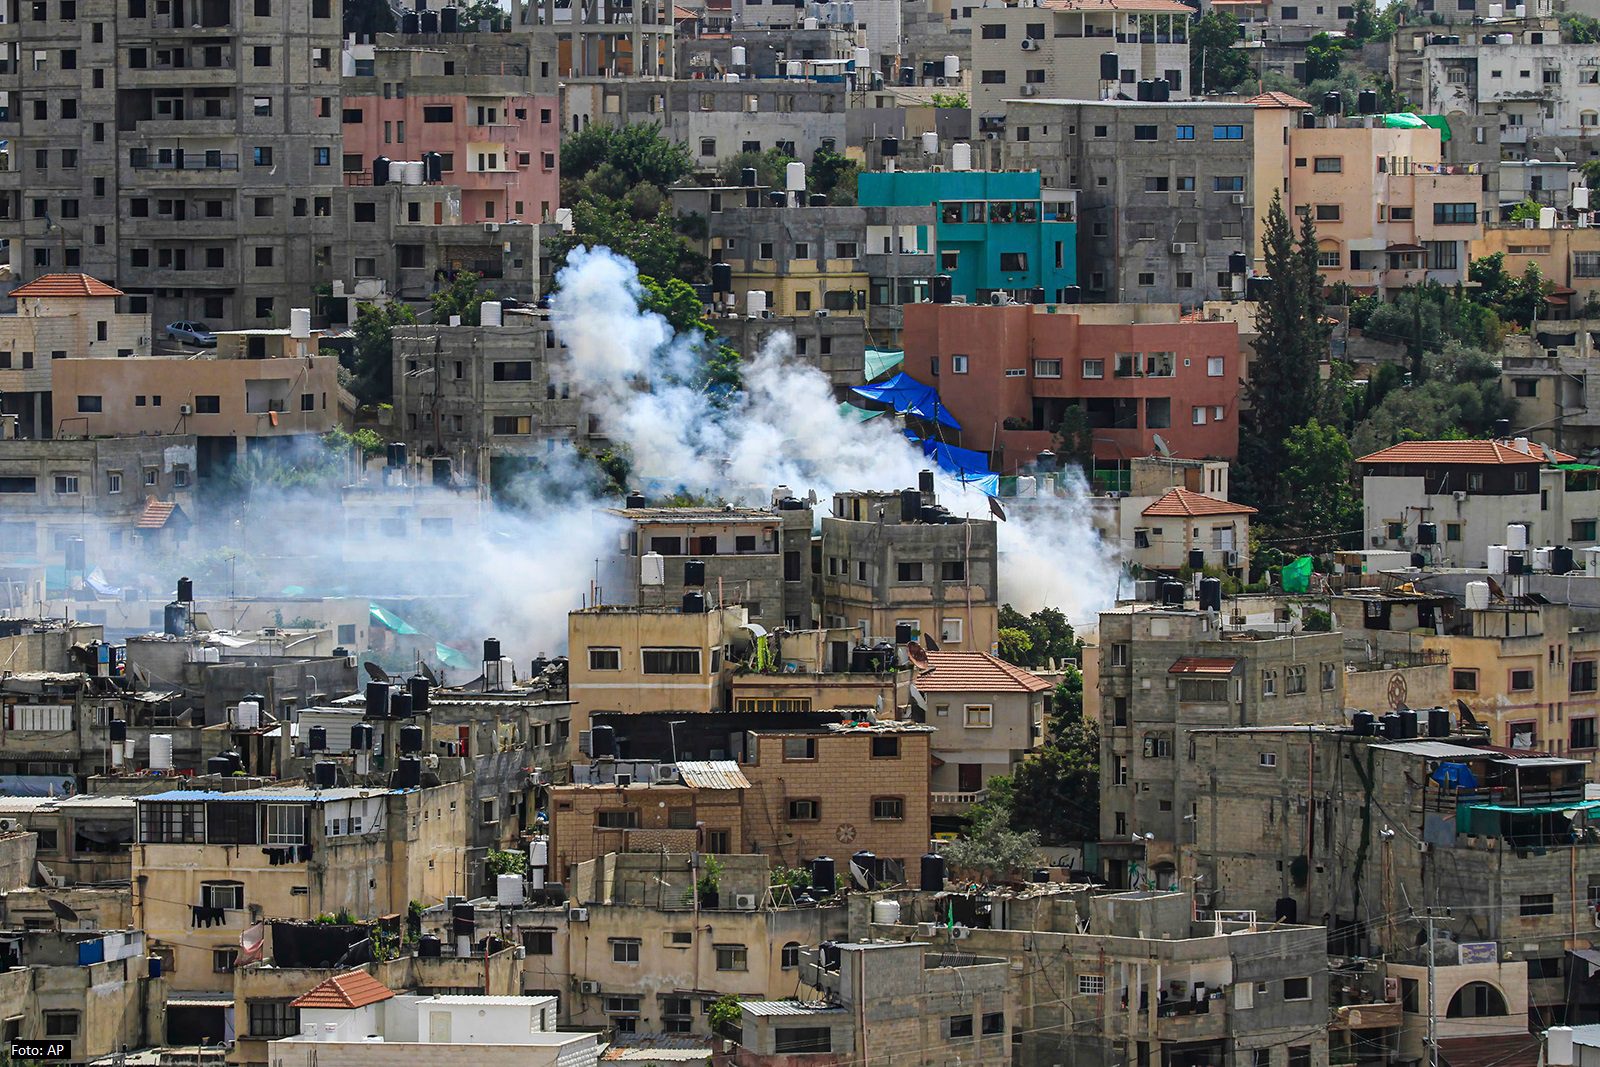 Raportohet se nga 7 tetori afër 10 mijë palestinezë janë arrestuar në Bregun Perëndimor